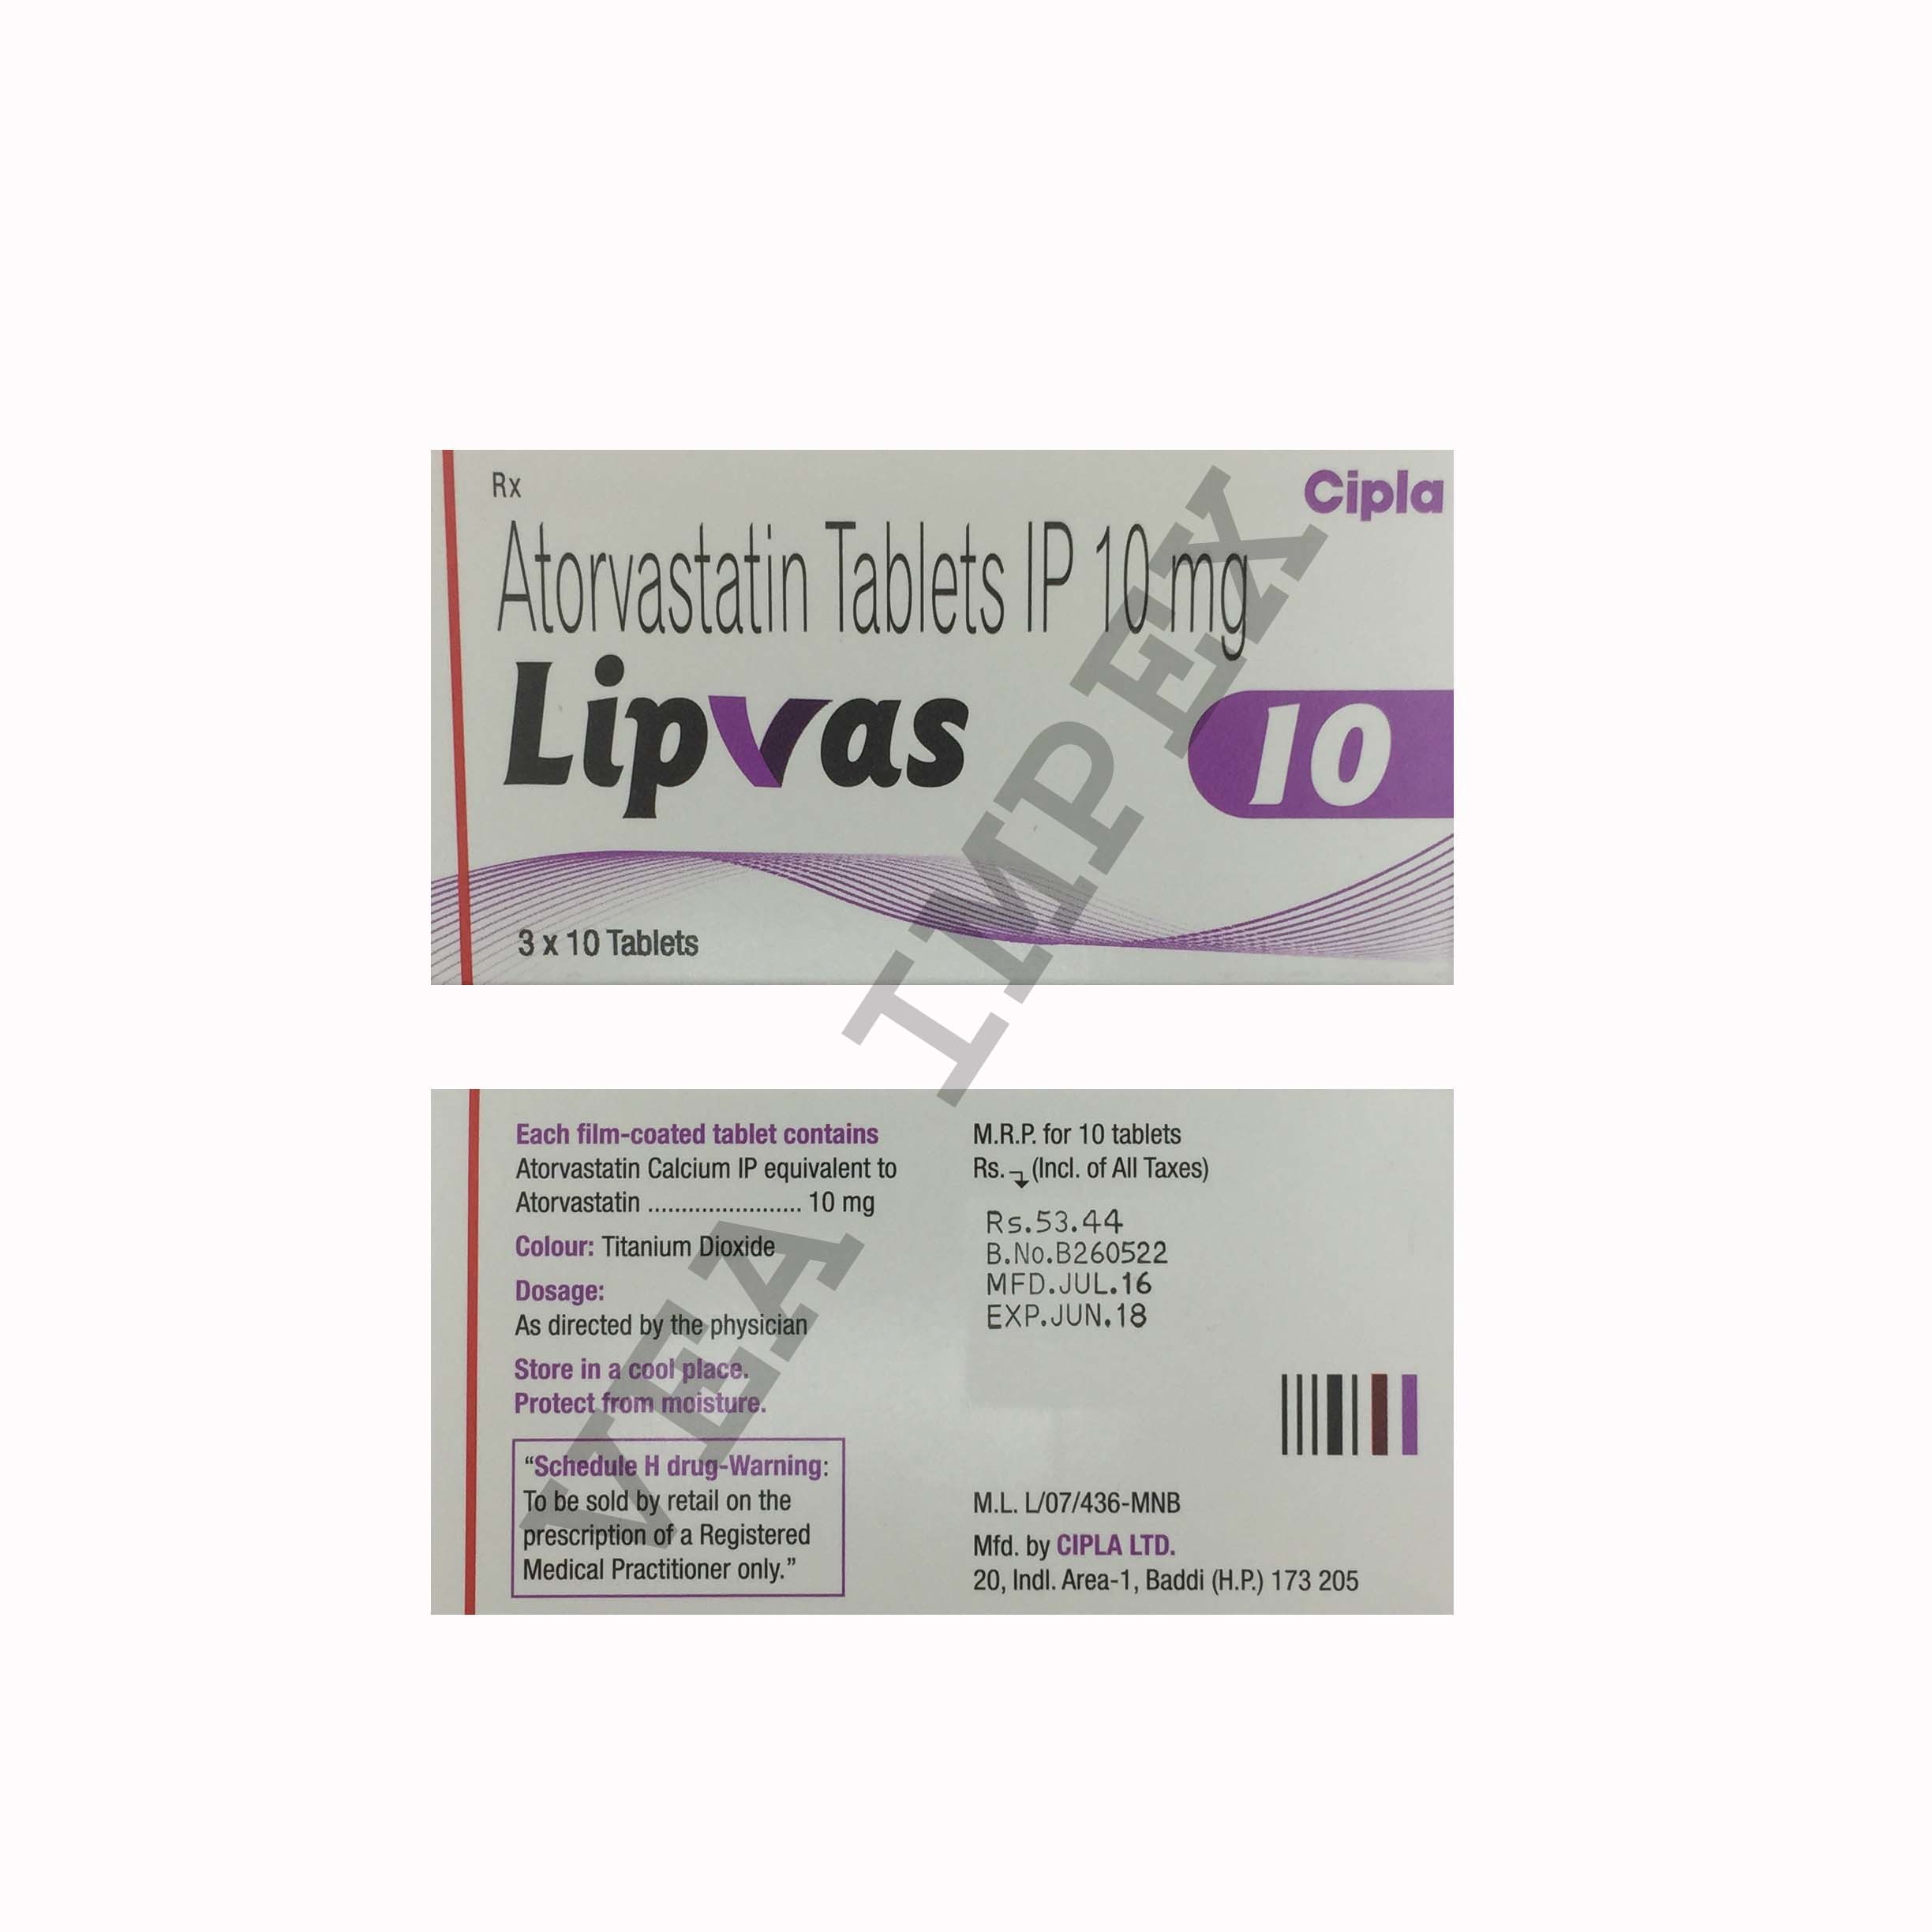 Lipvas 10 mg (Atorvastatin Tablets)